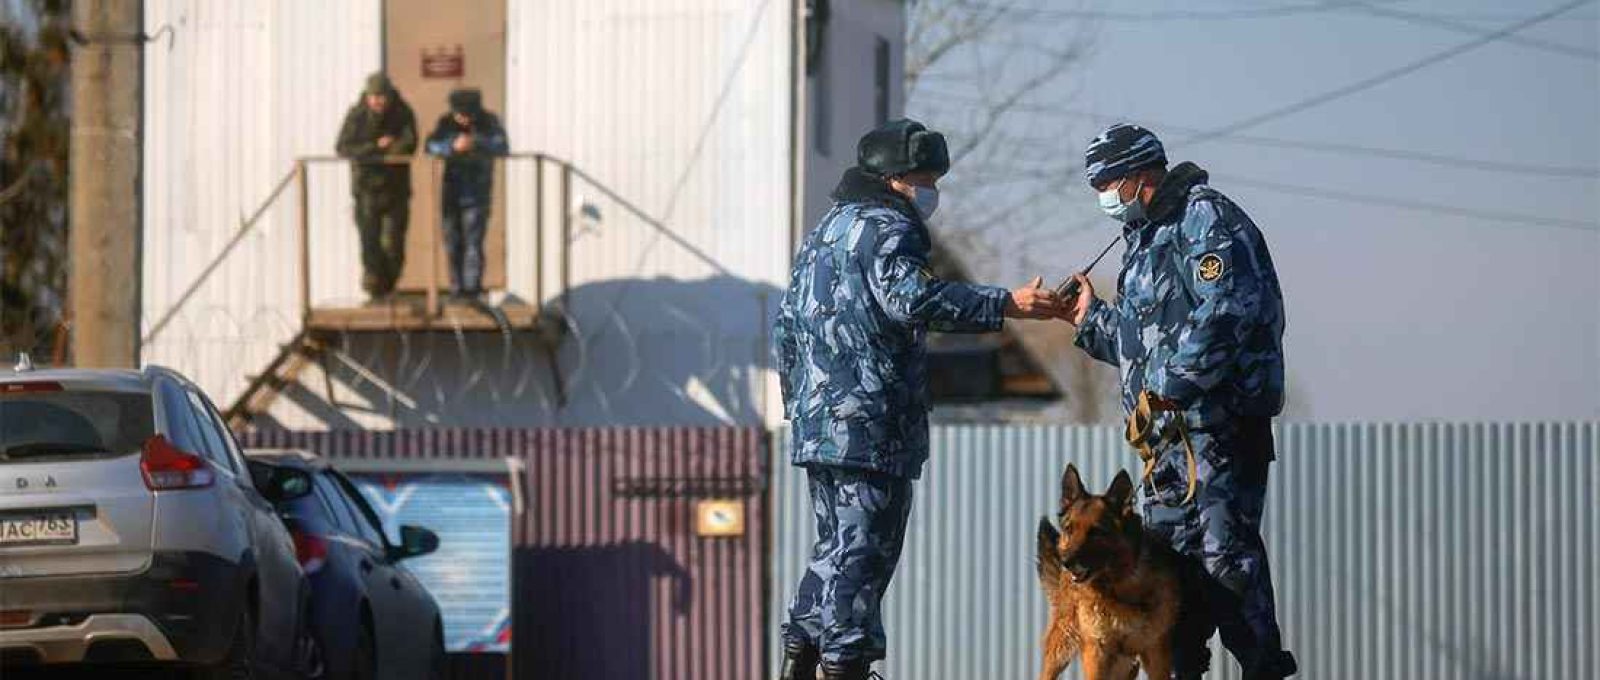 Policiais com um cão de guarda perto de um posto de controle de segurança da colônia penal corretiva IK-2, onde Alexei Navalny cumpre pena, na cidade de Pokrov, Rússia, em 6 de abril de 2021 (Maxim Shemetov/Reuters).